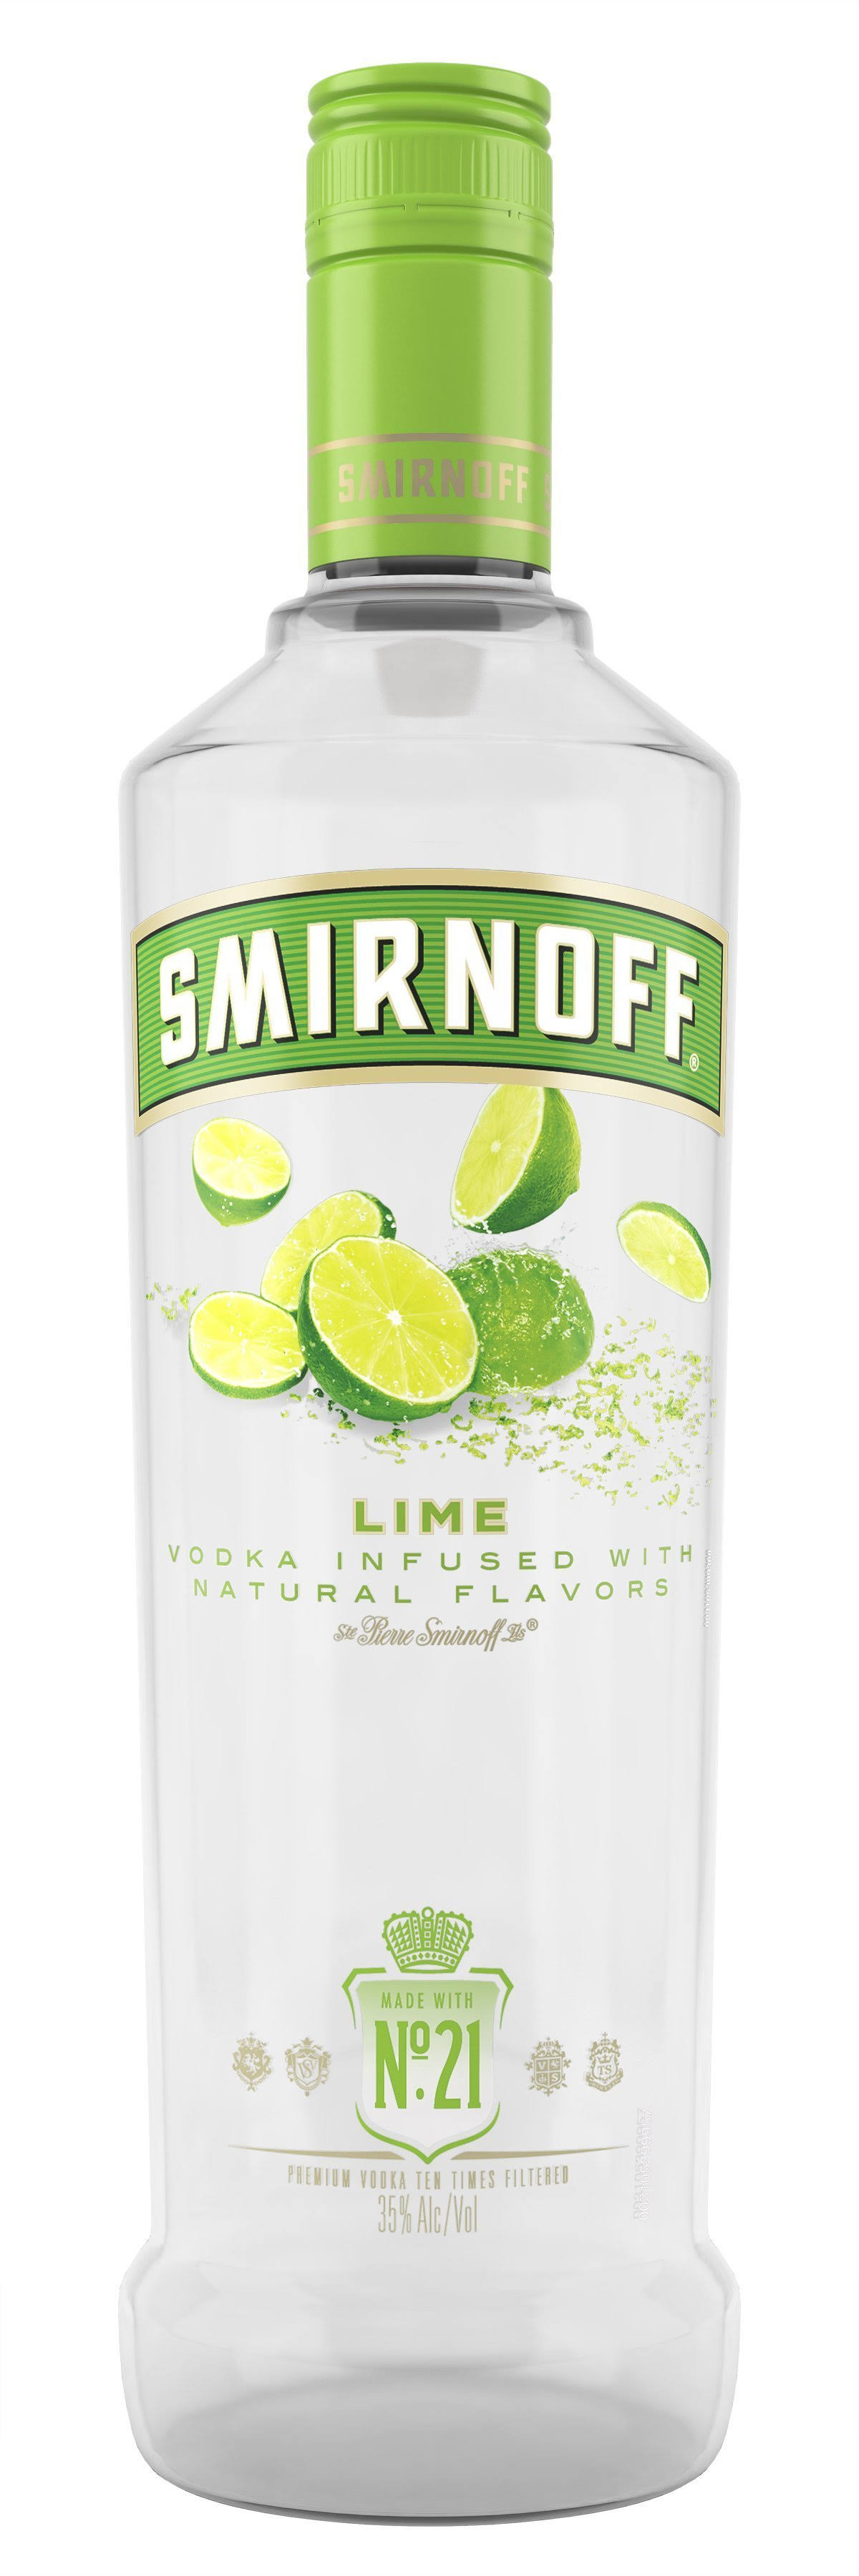 Smirnoff Vodka, Lime Flavored - 750 ml